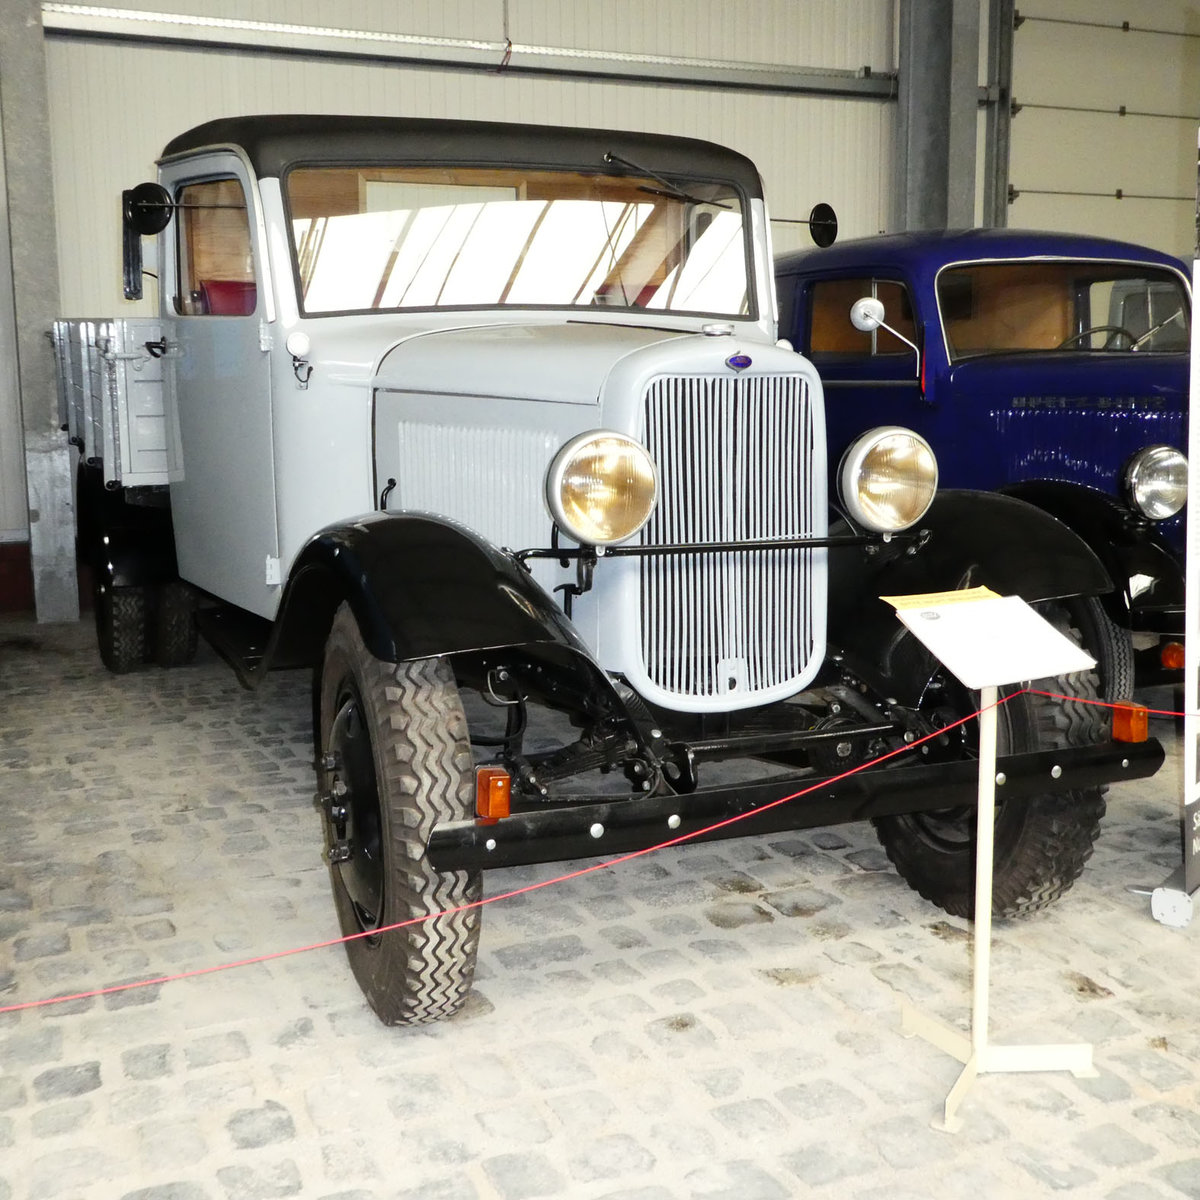 =Ford BB, Bj. 1938, gesehen im sächsischen Nutzfahrzeugmuseum in Hartmannsdorf, Juli 2016